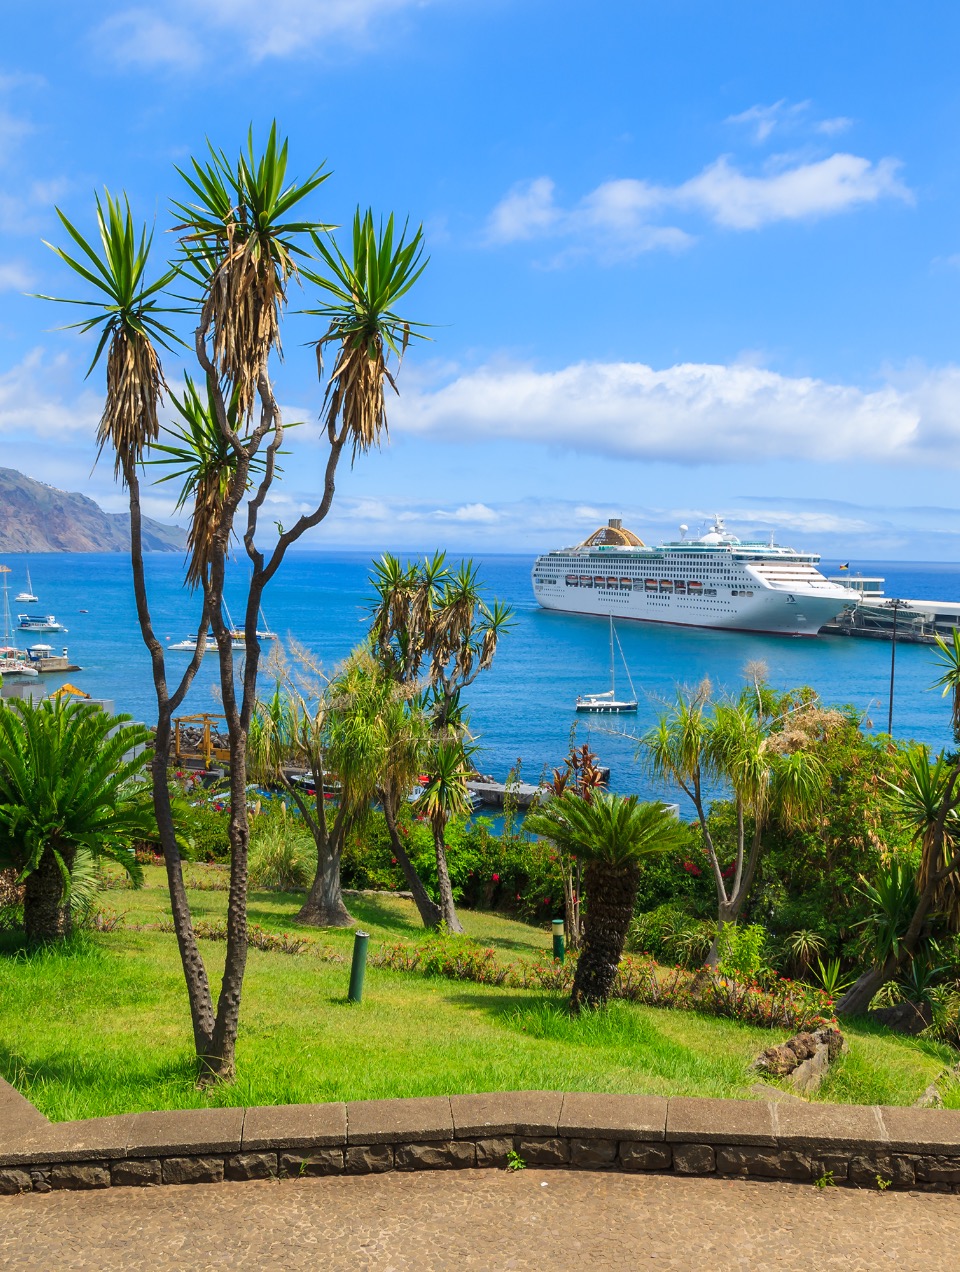 Maritime transport – International Ship Registry of Madeira